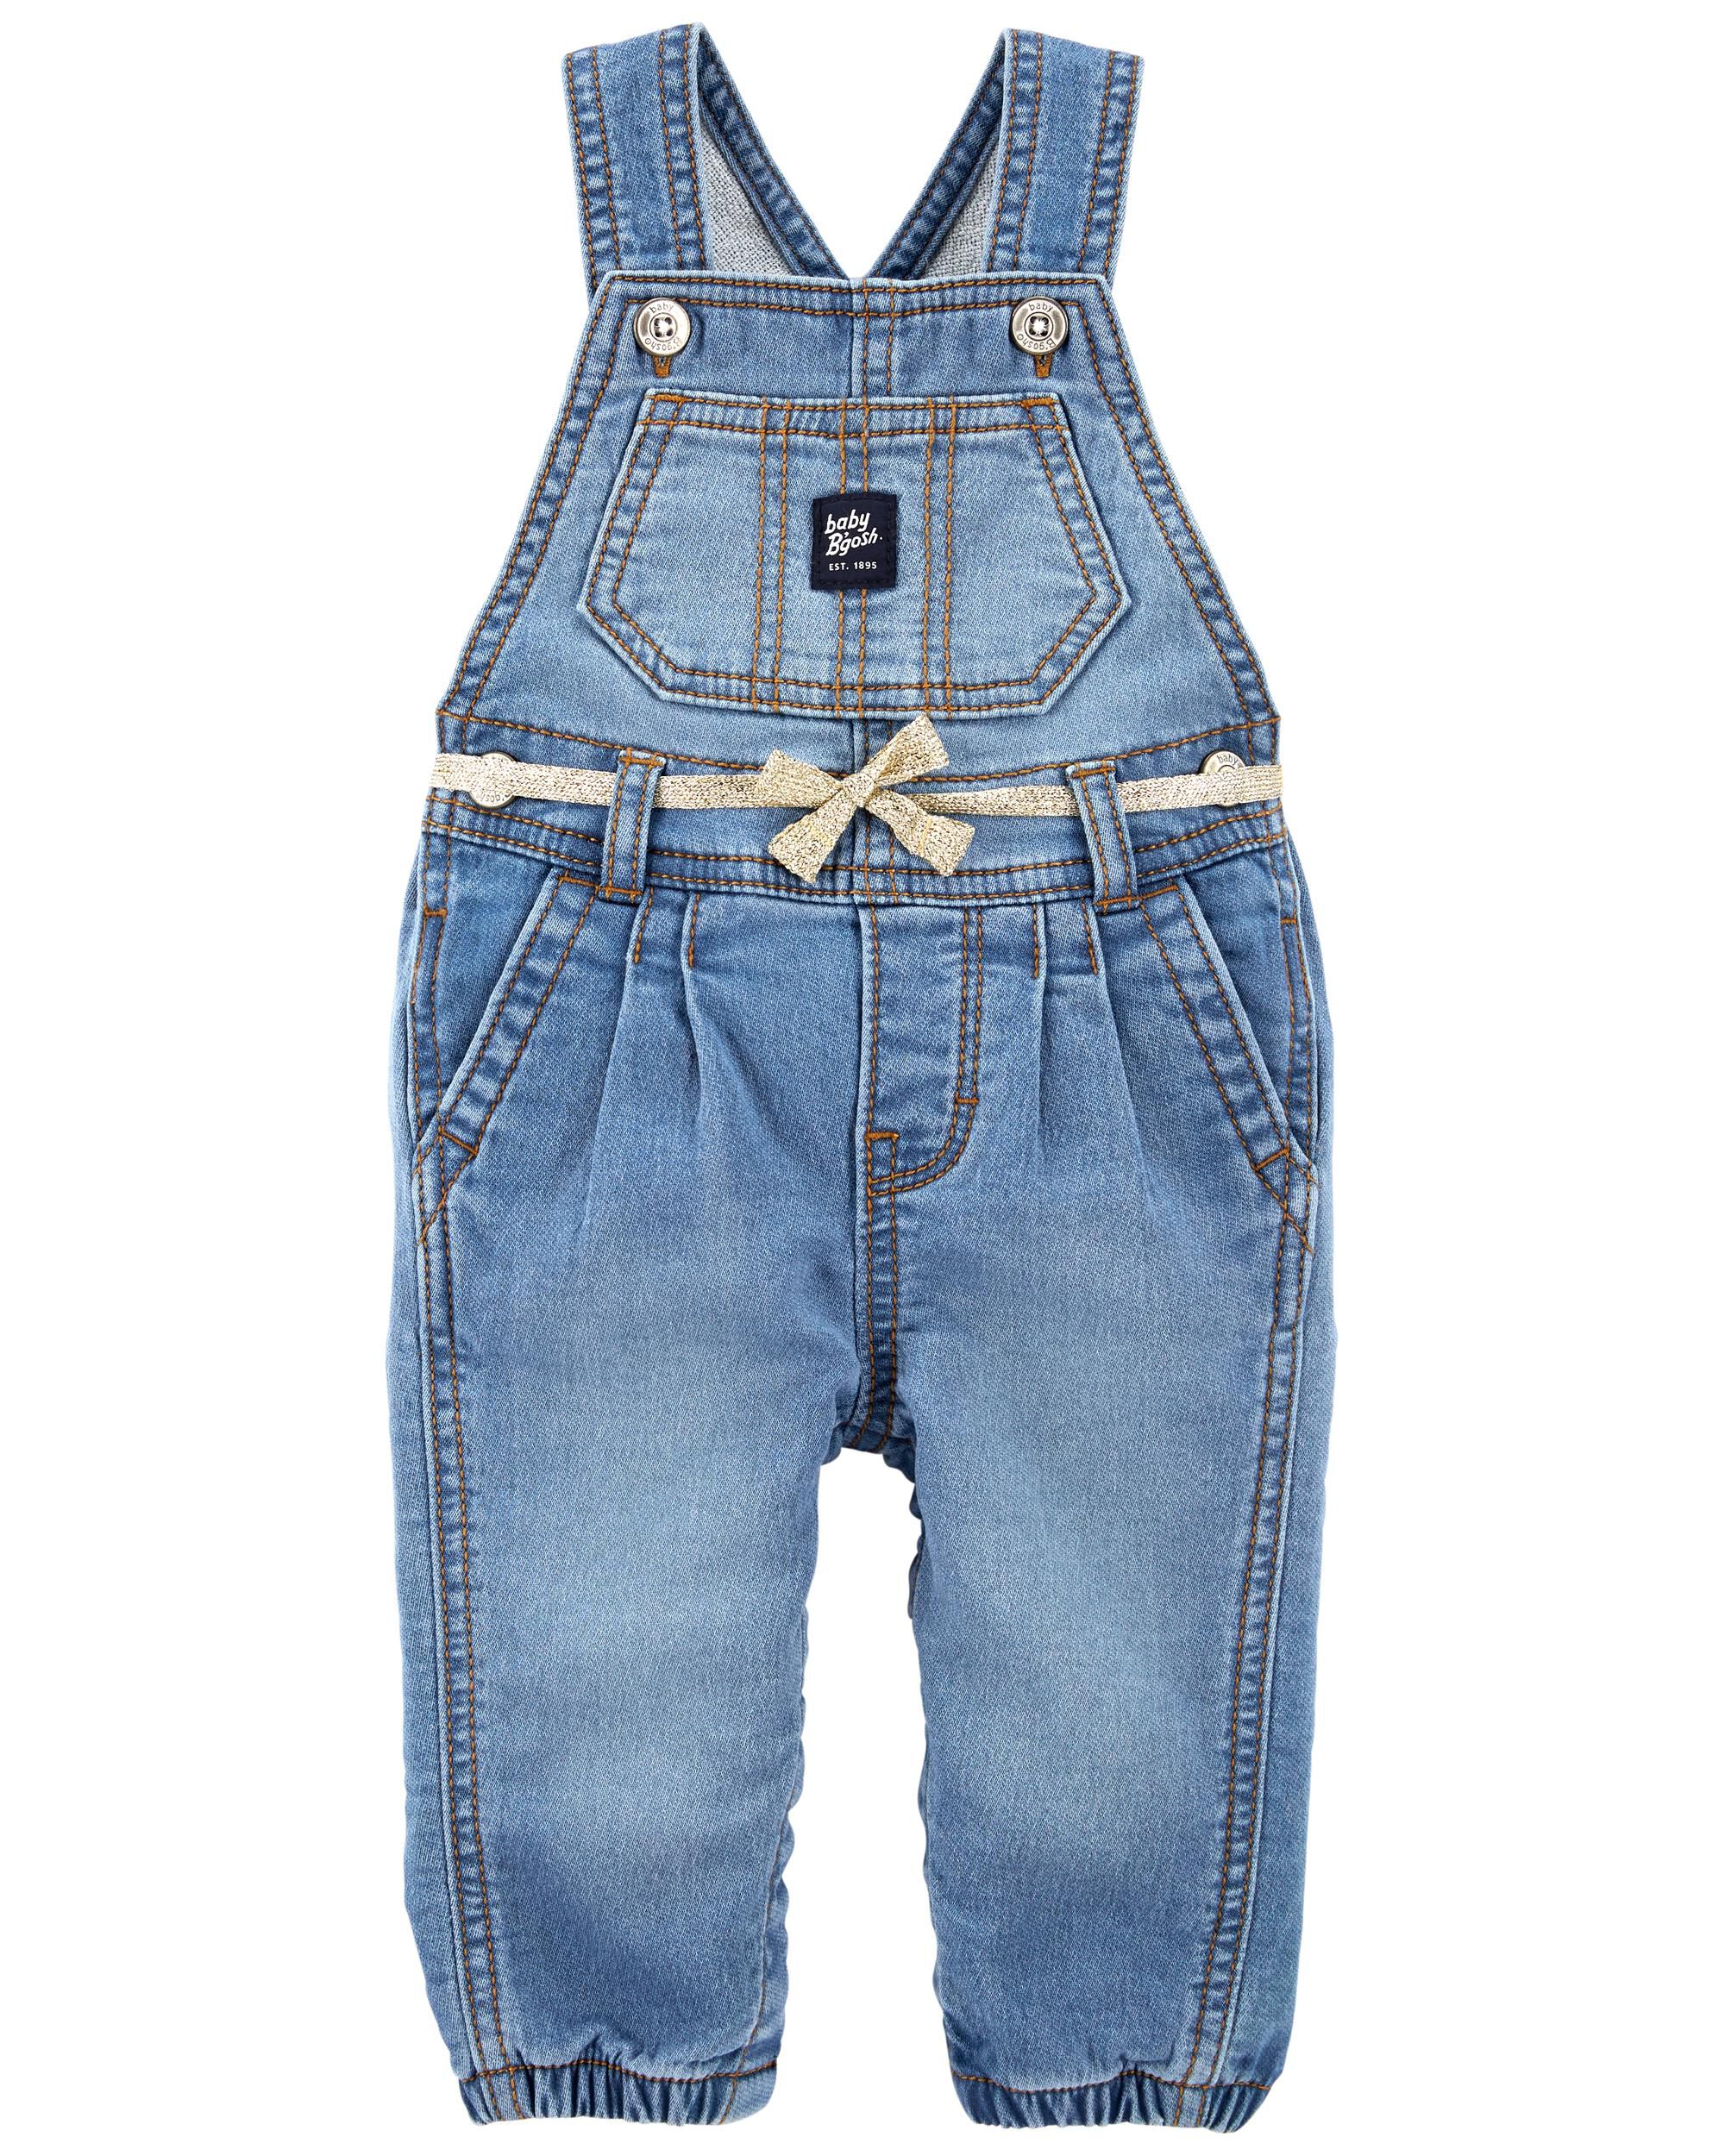 infant blue jean overalls